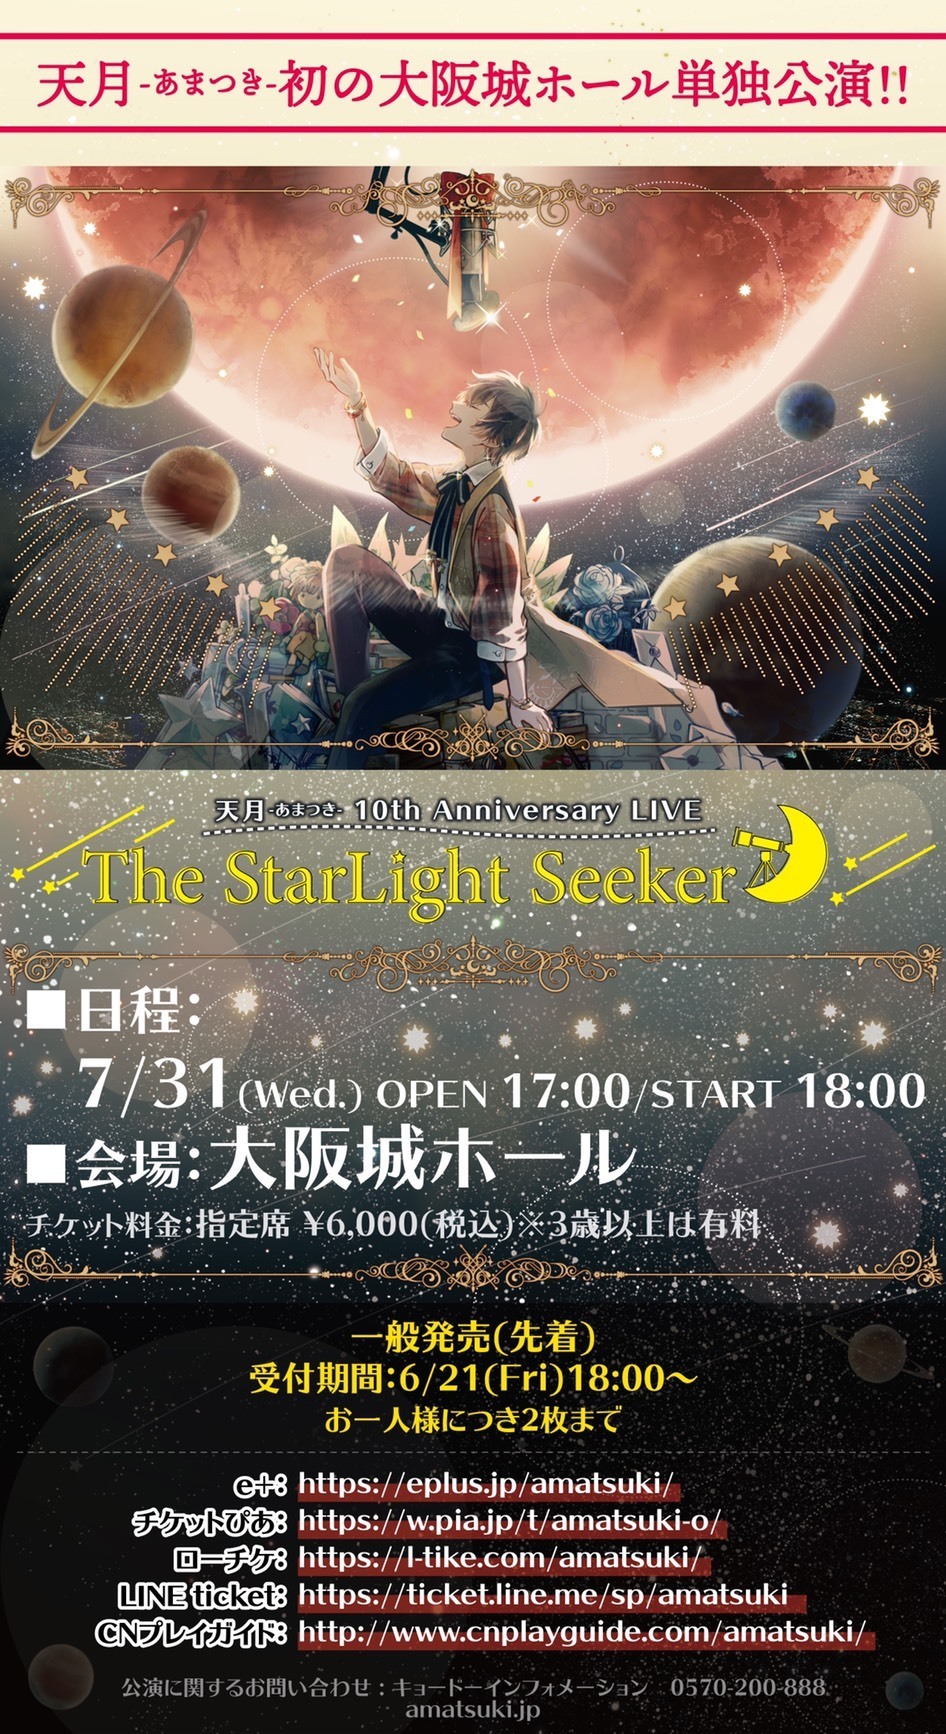 天月 大阪城ホールワンマンライブ The Starlight Seeker 一般発売開始 天月 Official Web Site